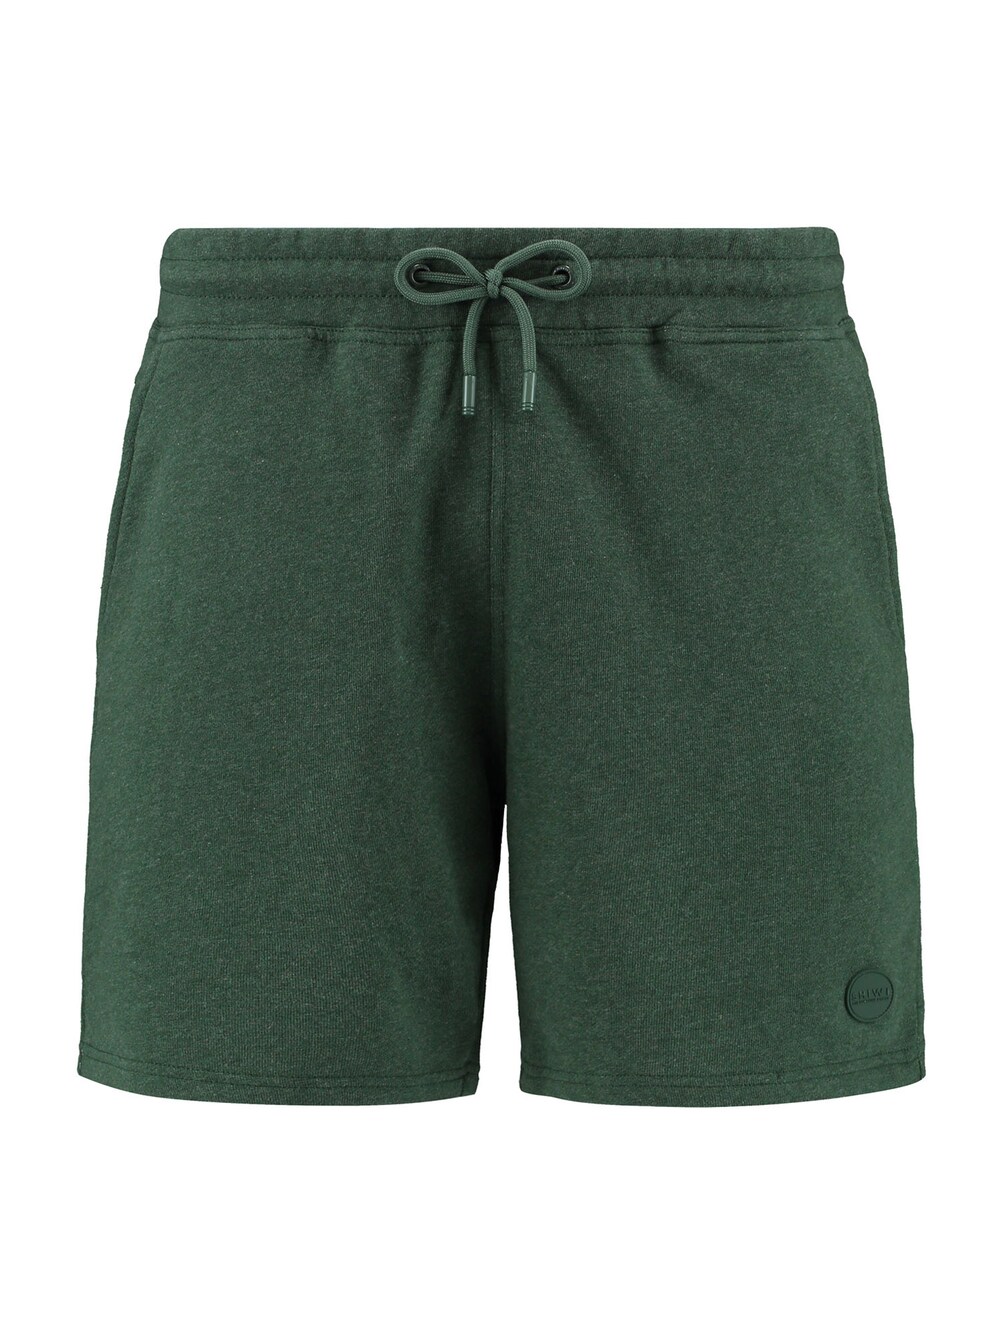 Обычные брюки Shiwi, темно-зеленый